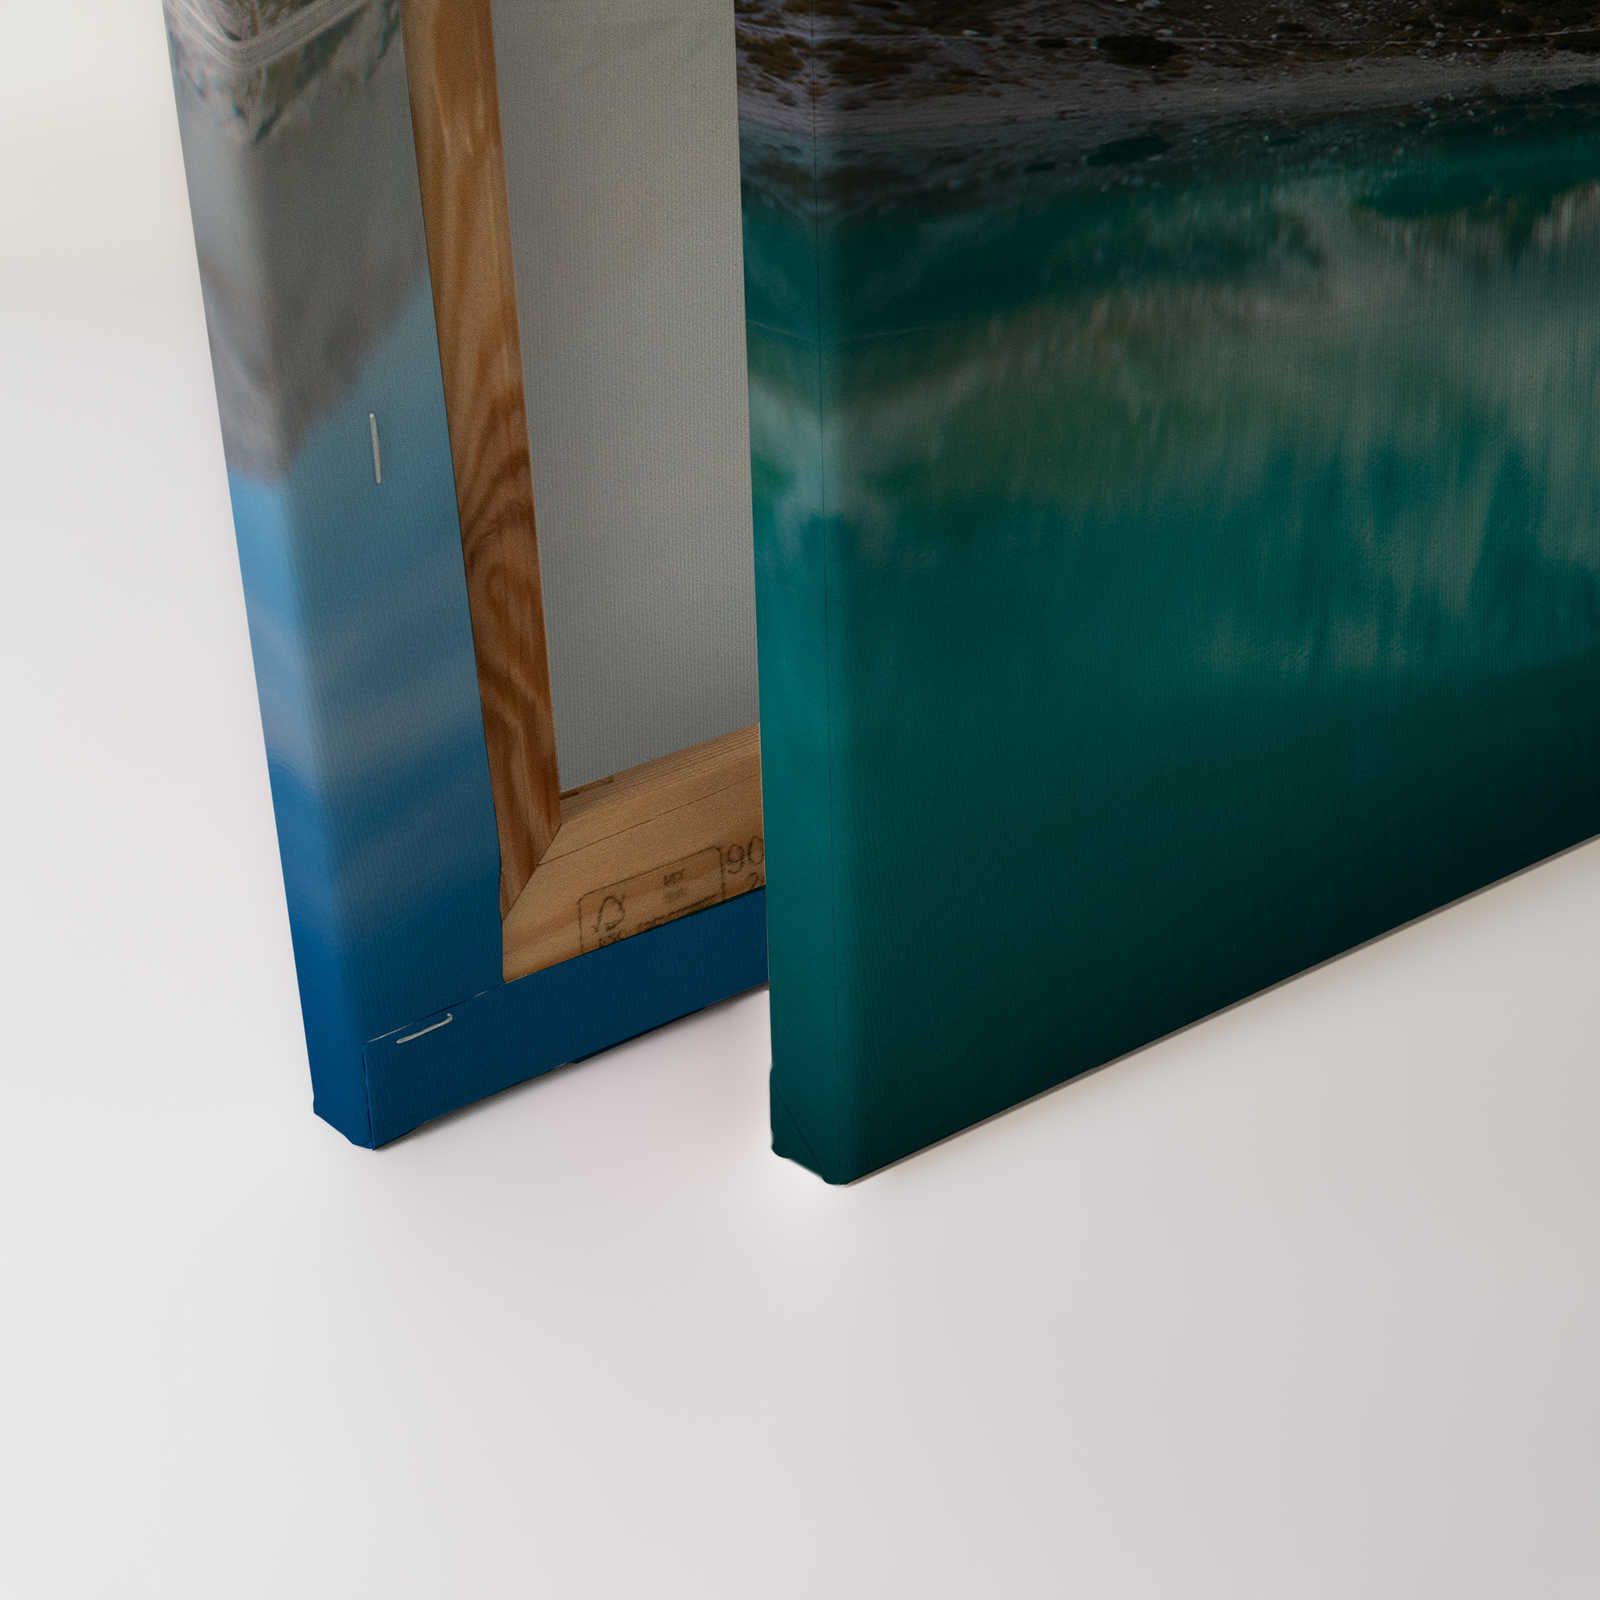             Helder bergmeer - Canvas schilderij met natuurlijk bergpanorama - 0,90 m x 0,60 m
        